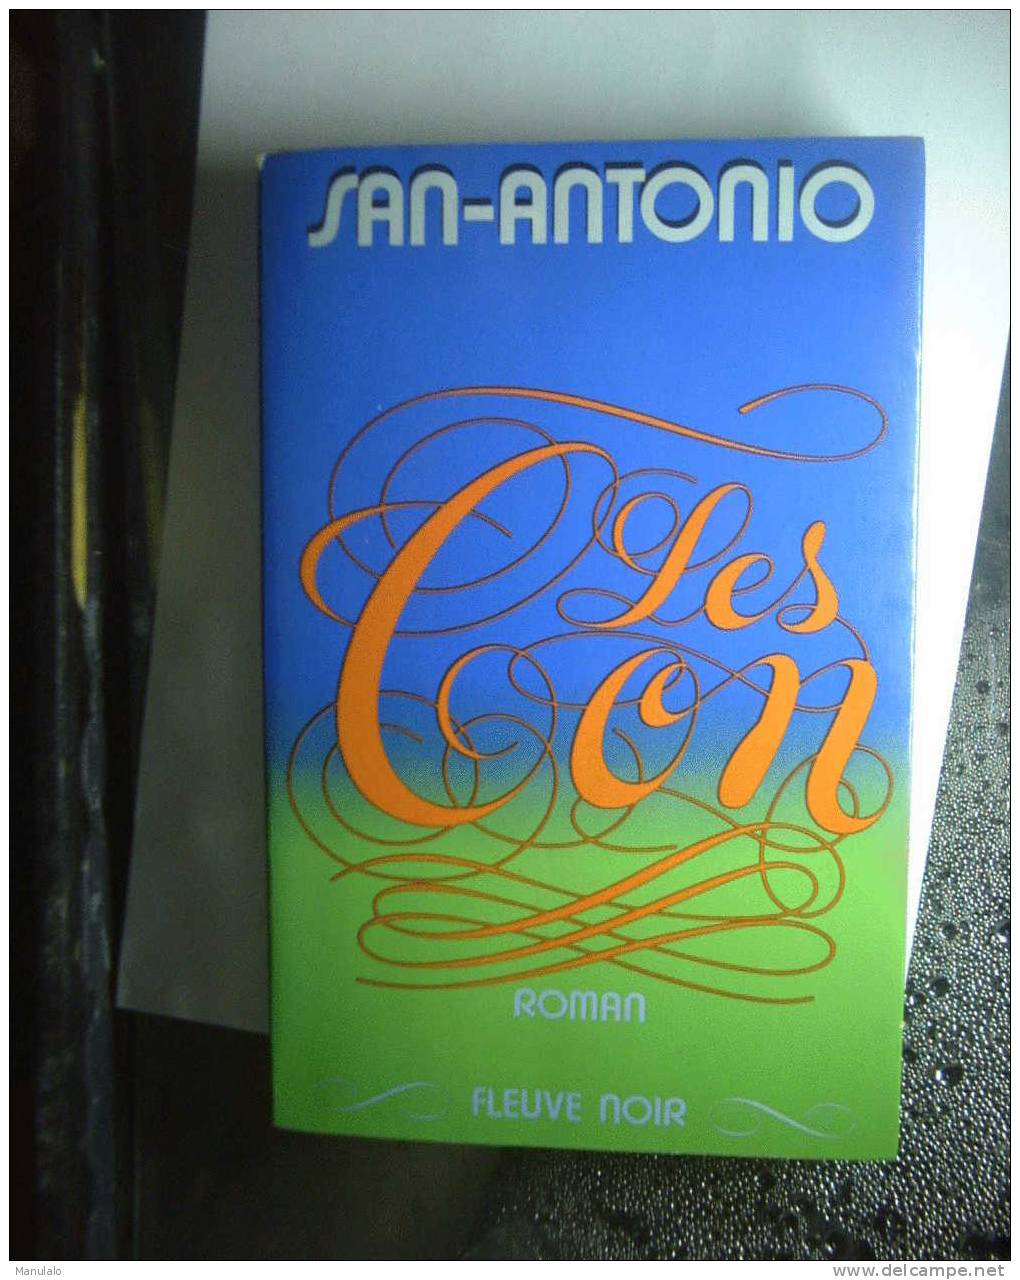 Livre éditions Fleuve Noir De San-antonio " Les Con "année 1973 - Fleuve Noir